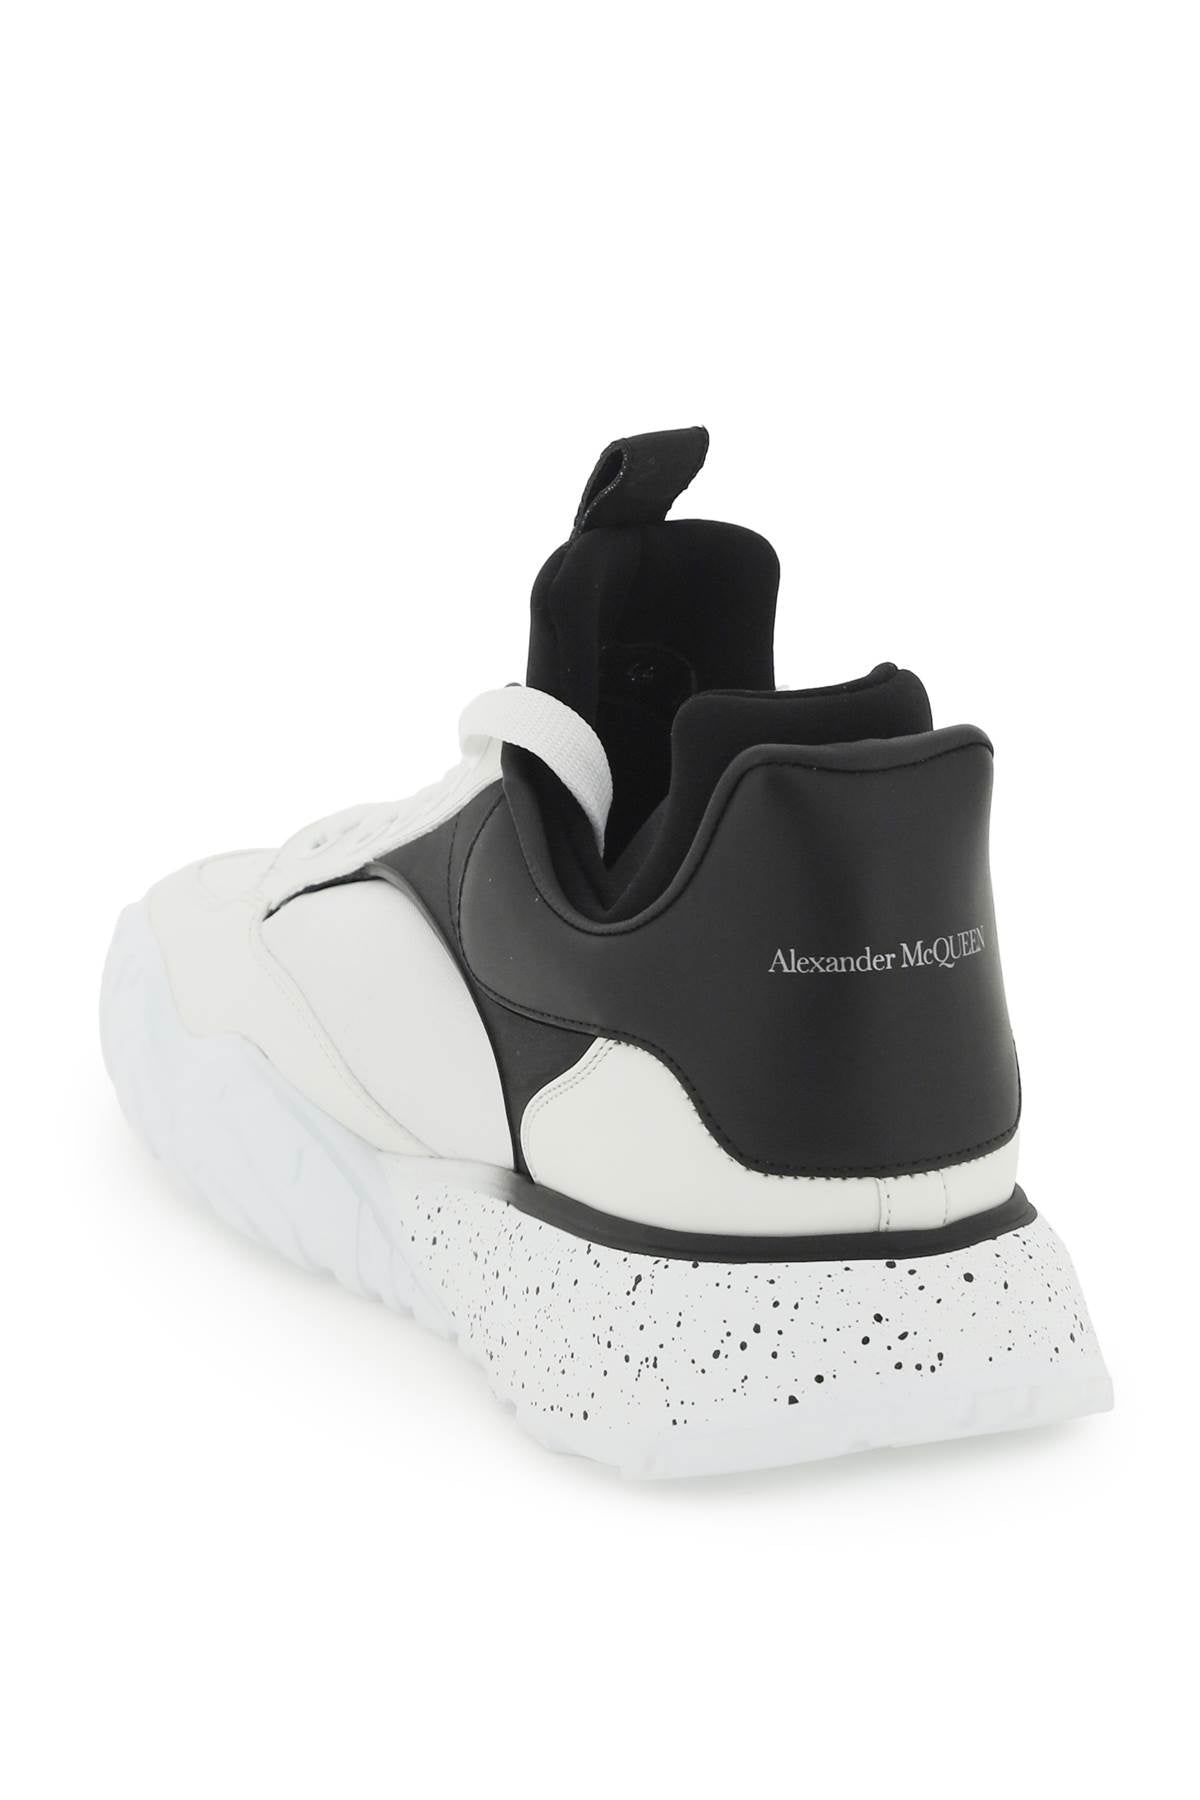 Alexander mcqueen 'court tech' sneakers